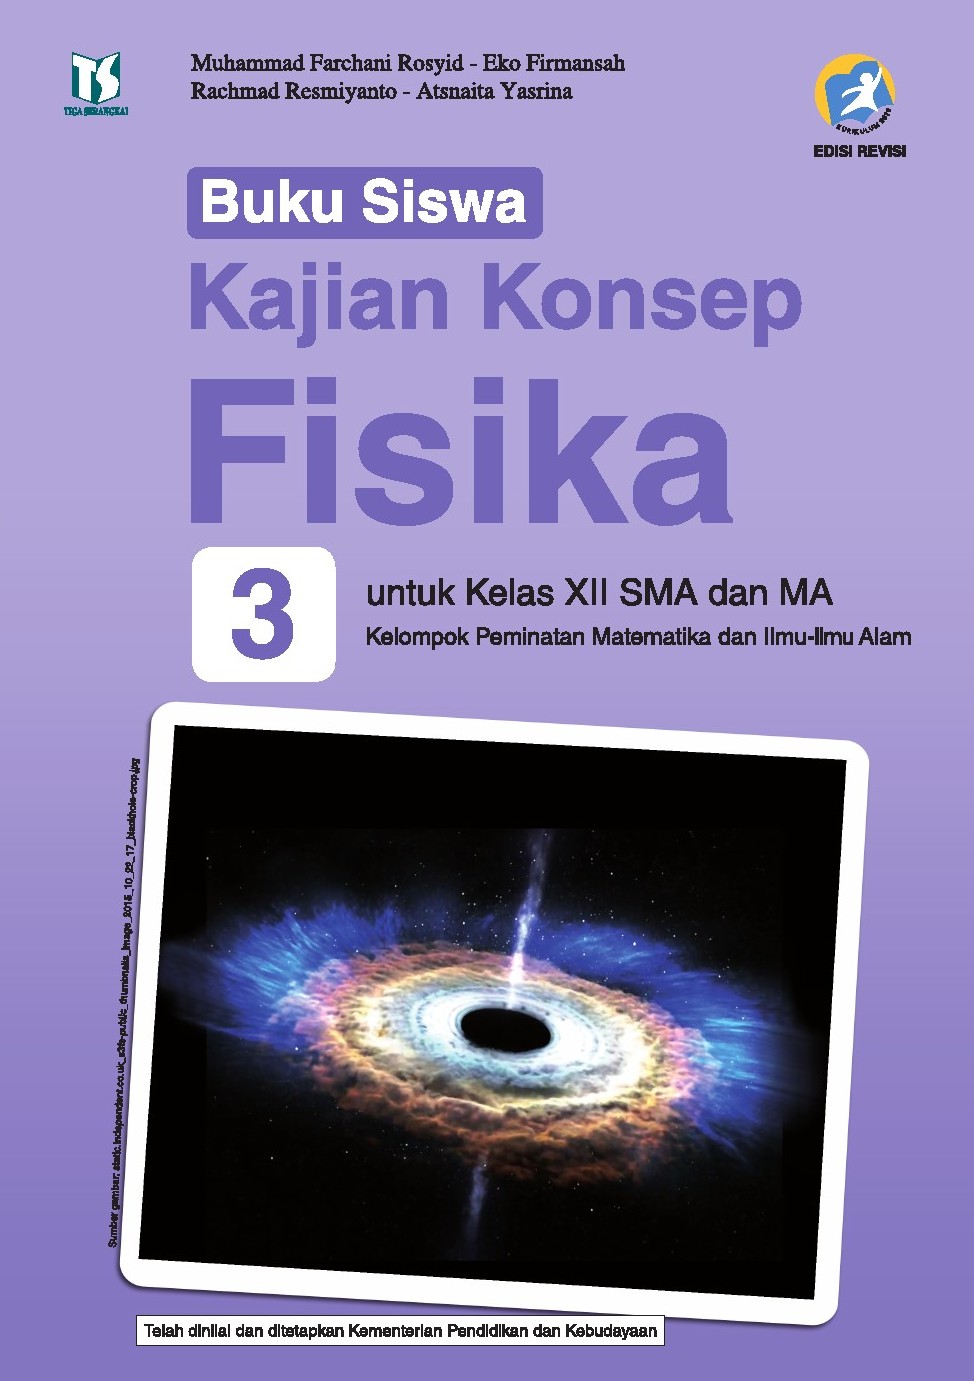 Buku Paket Fisika Kelas 12 Kurikulum 2013 Revisi Pdf - Kanal Jabar